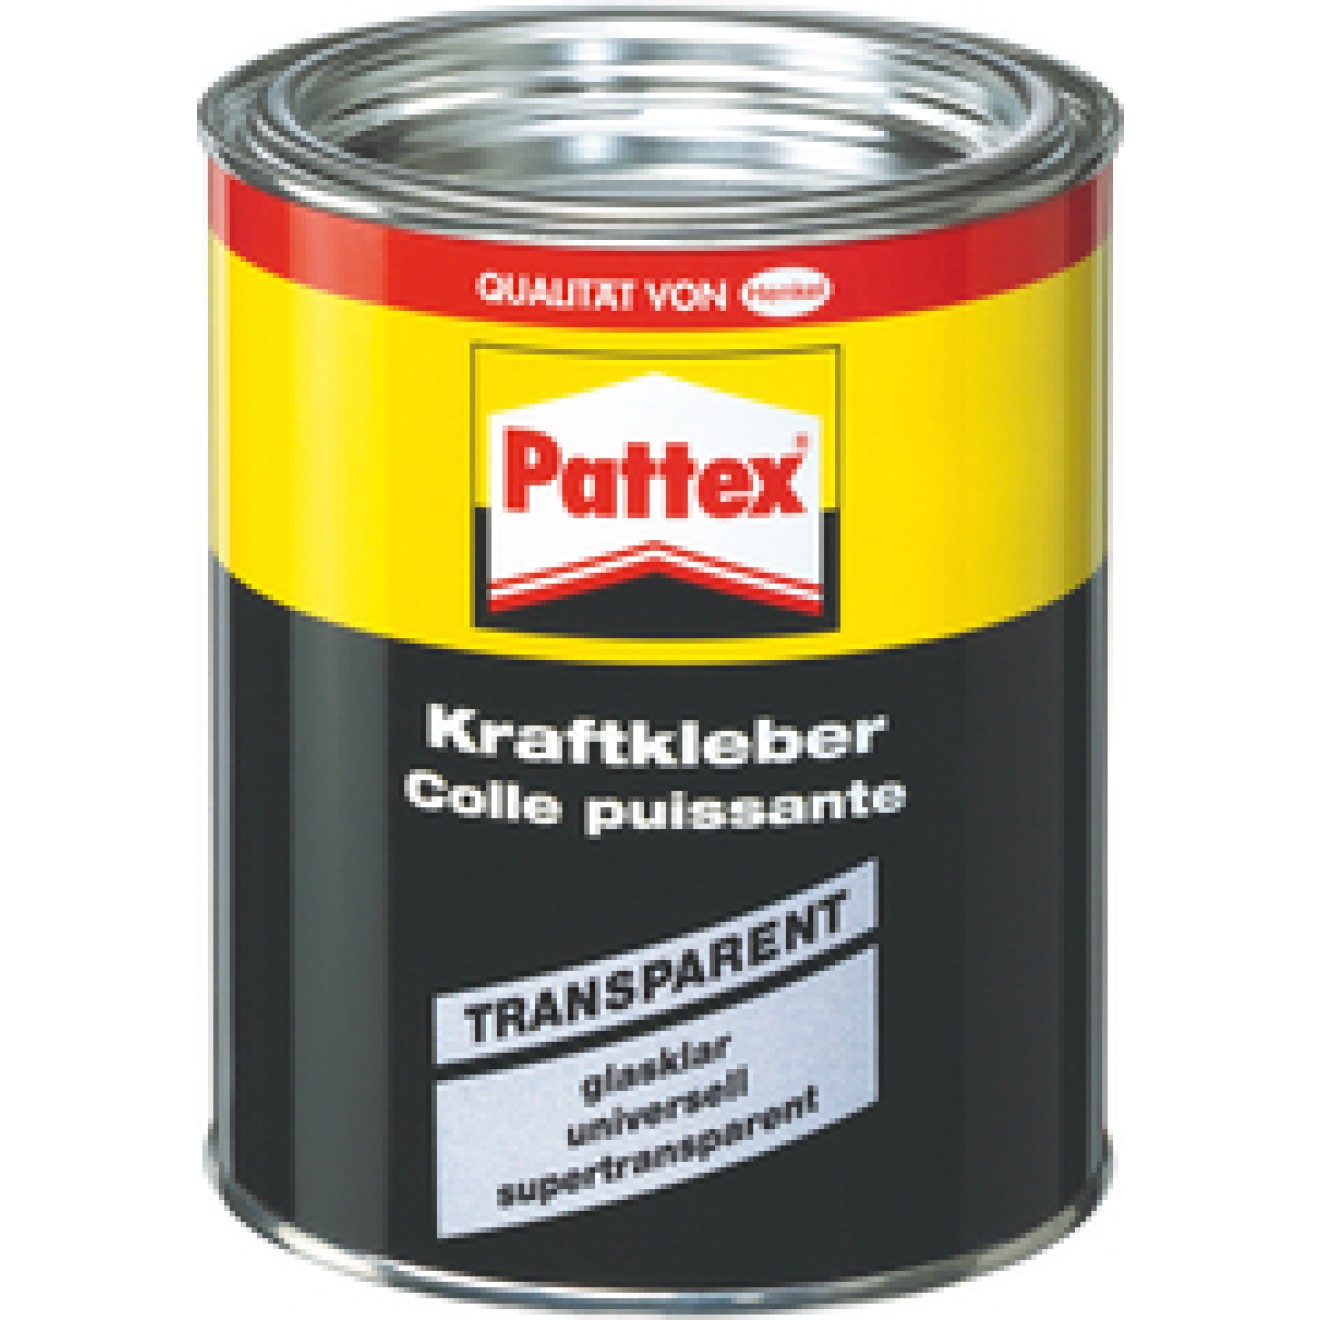 Pattex Kraftkleber Transparent 650gr.